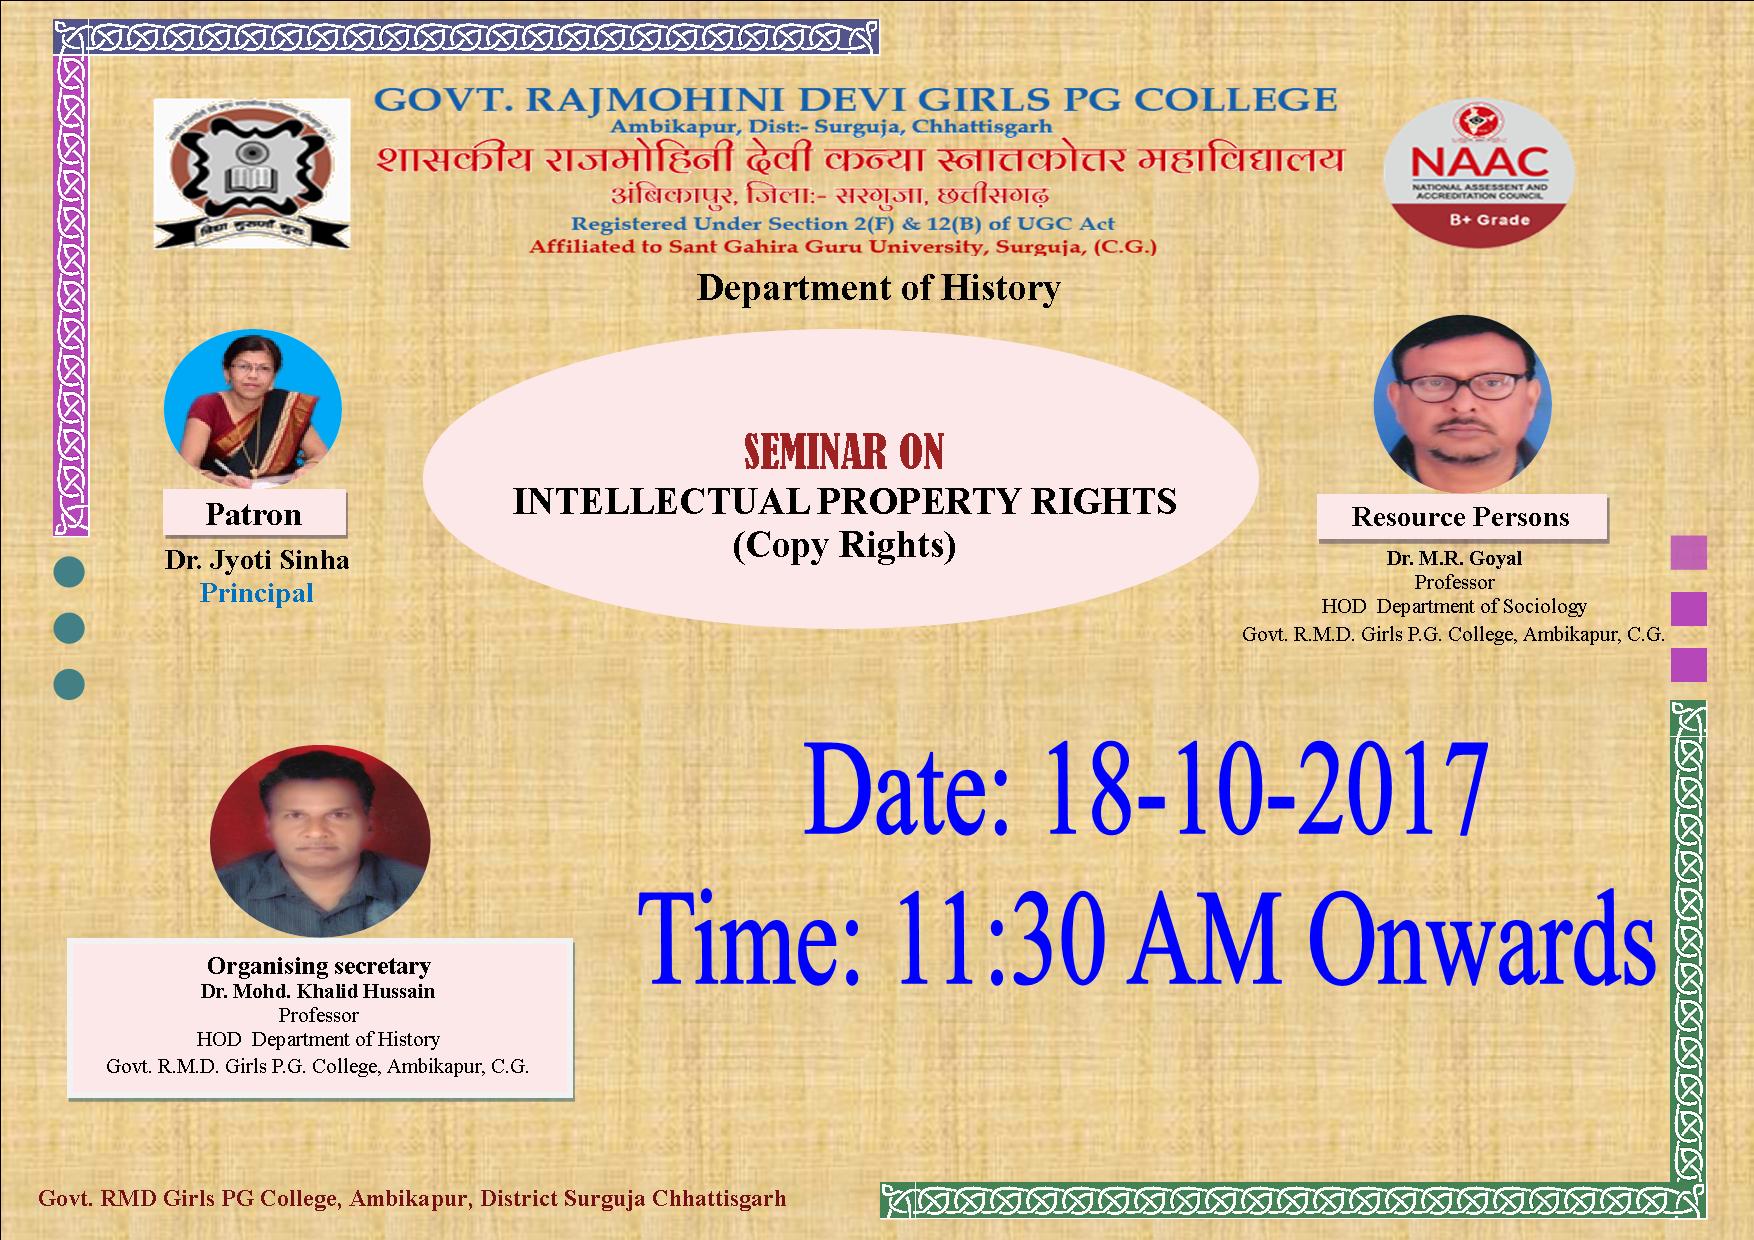 Photo- Govt Rajmohini Devi Girls PG College, Ambikapur